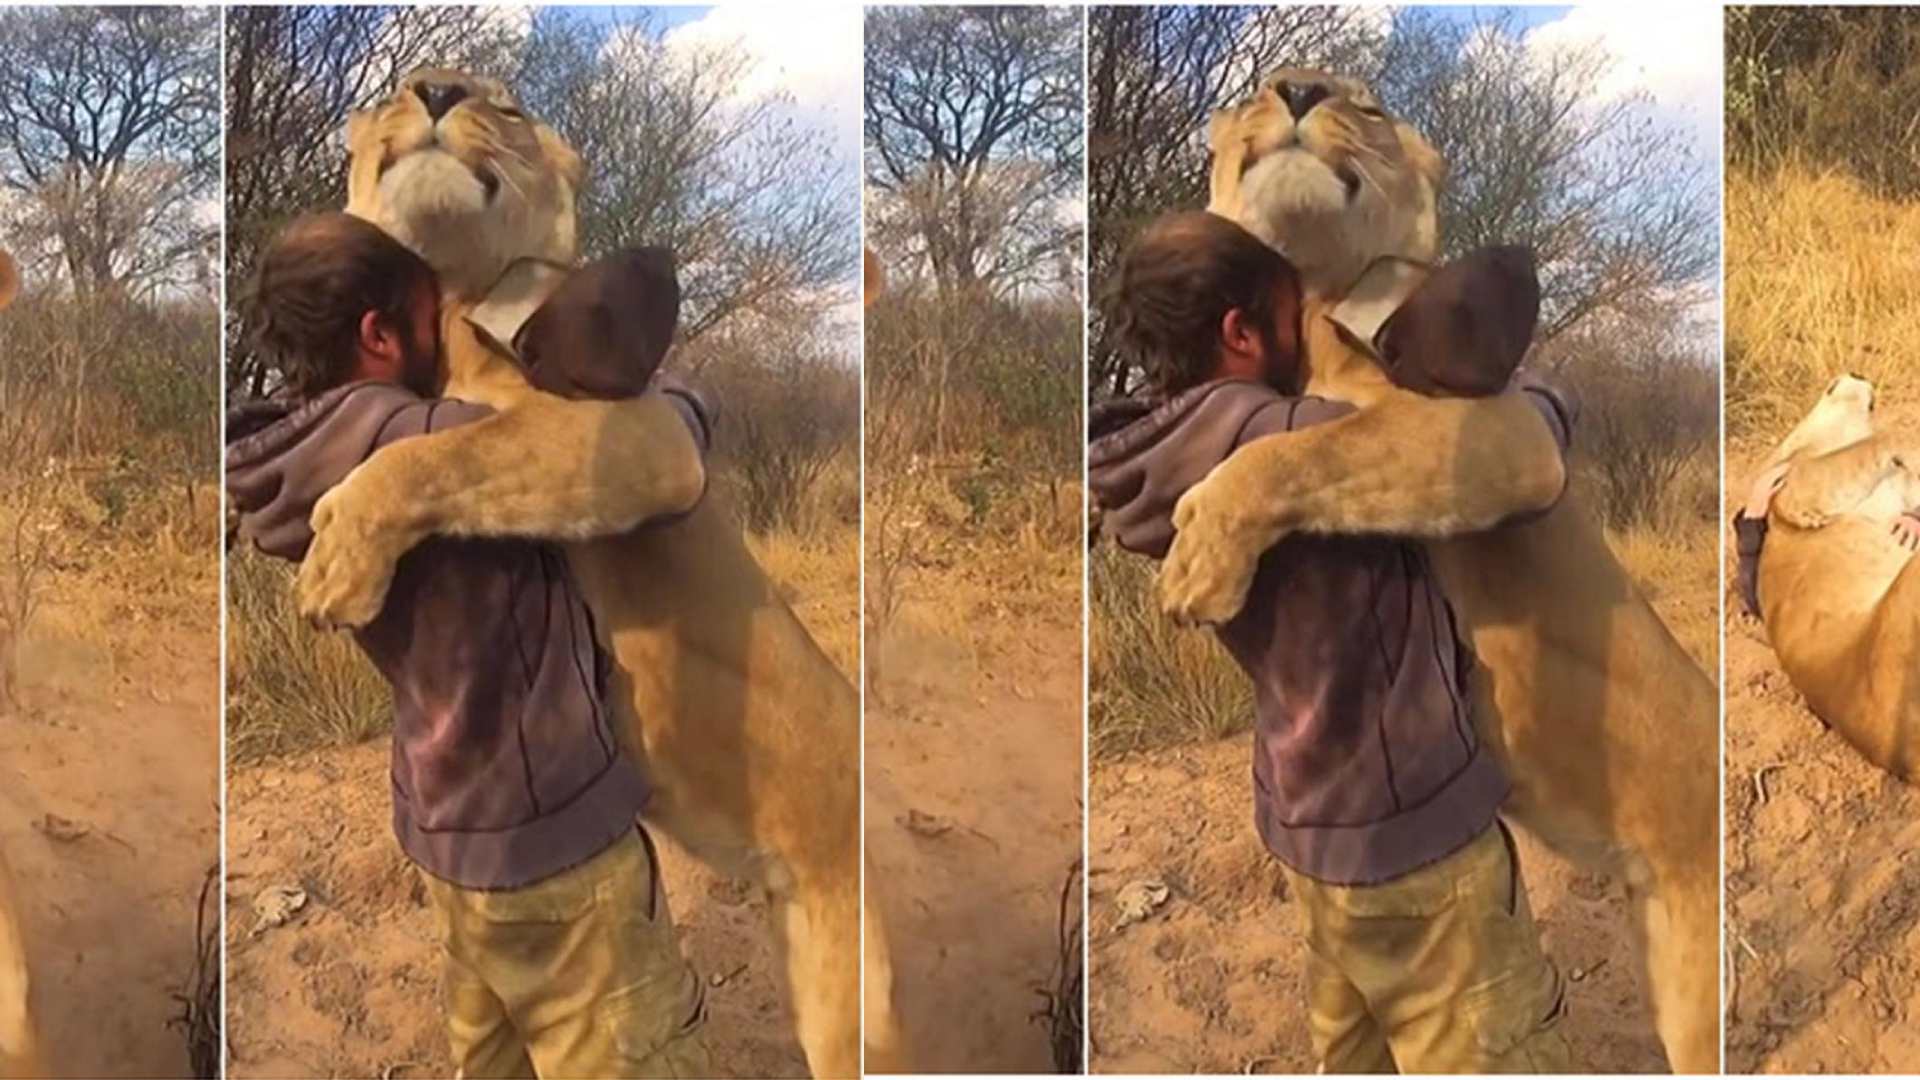 Abrazo de hombre y león se vuelve viral, el enorme felino demuestra vínculo afectivo